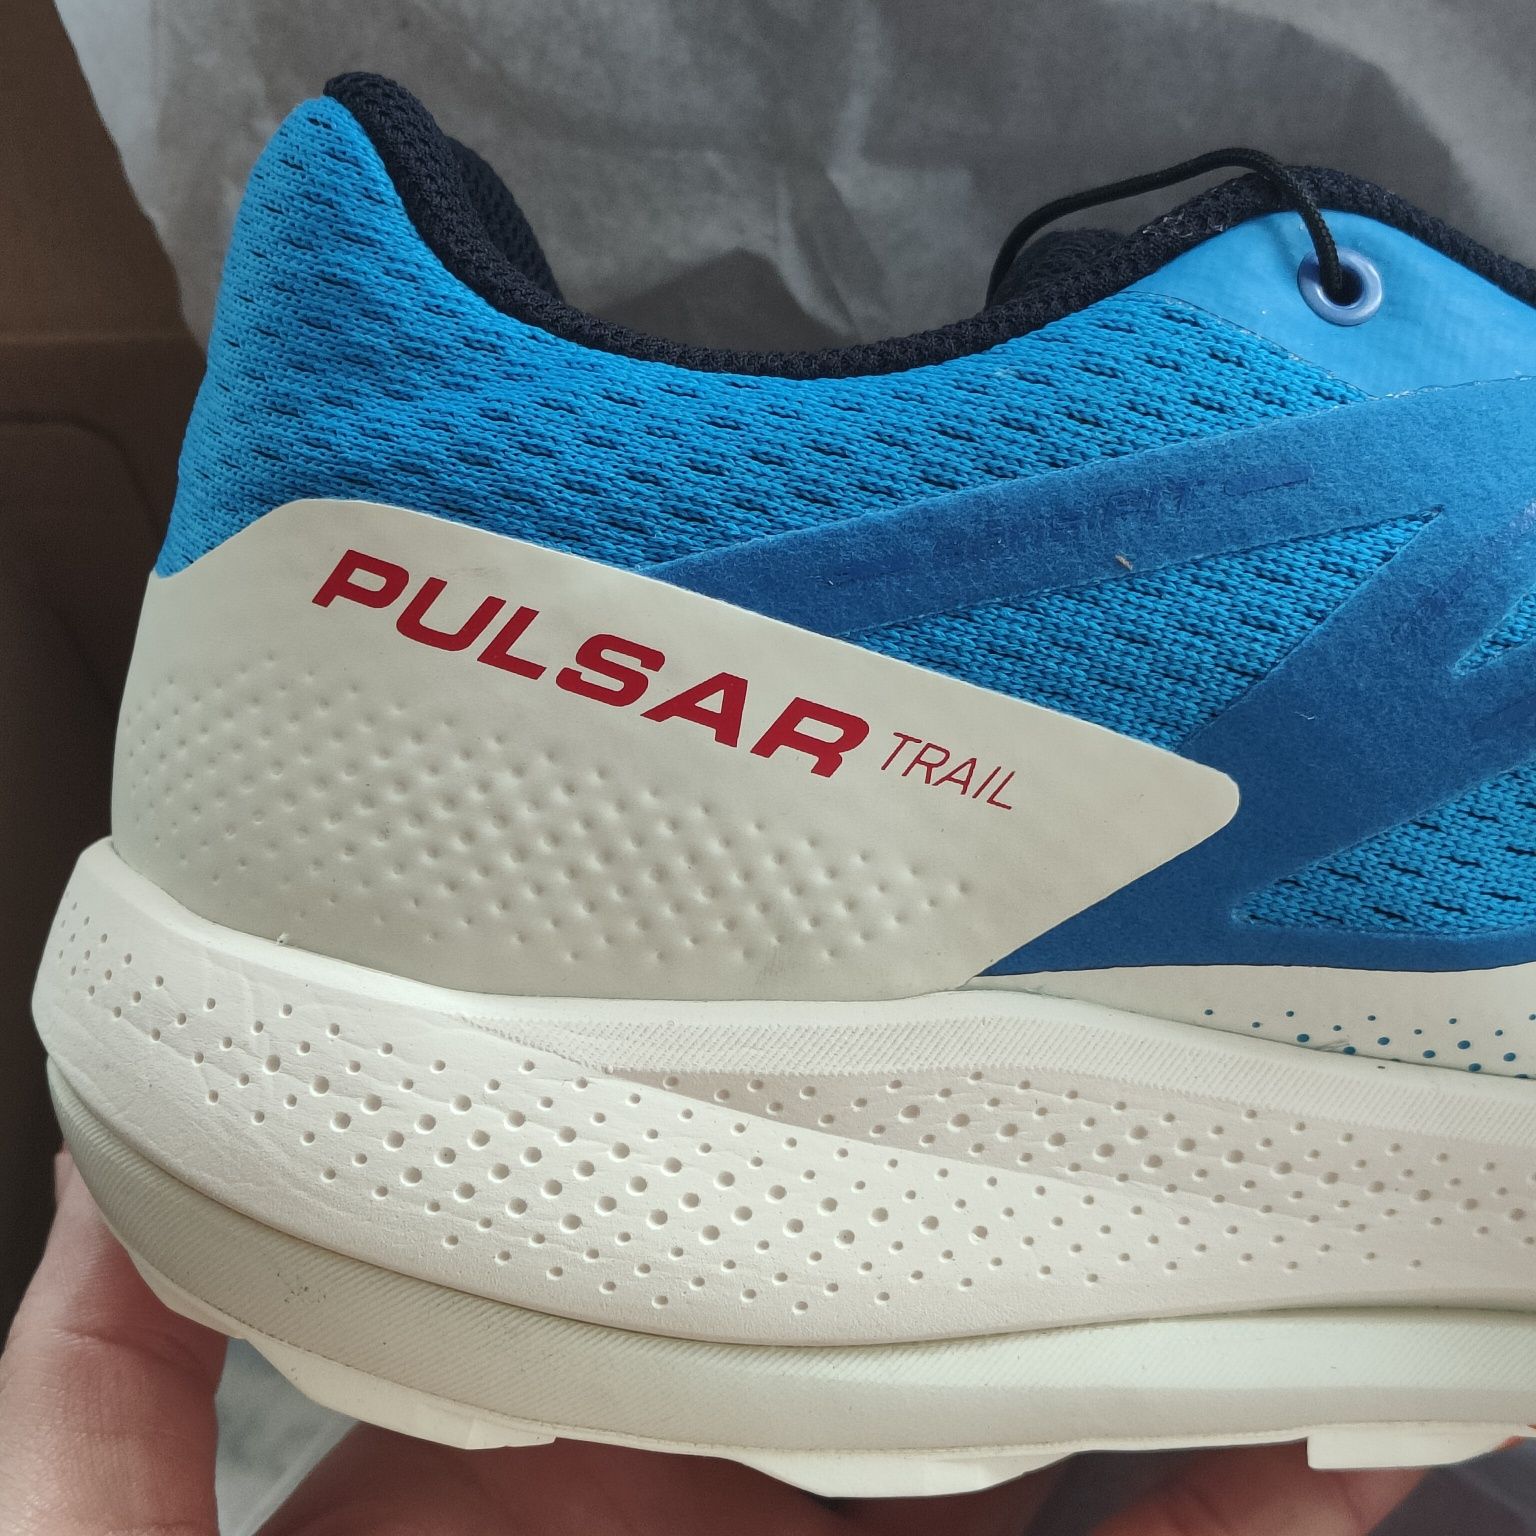 Salomon Pulsar Trail кроссовки для бега cross